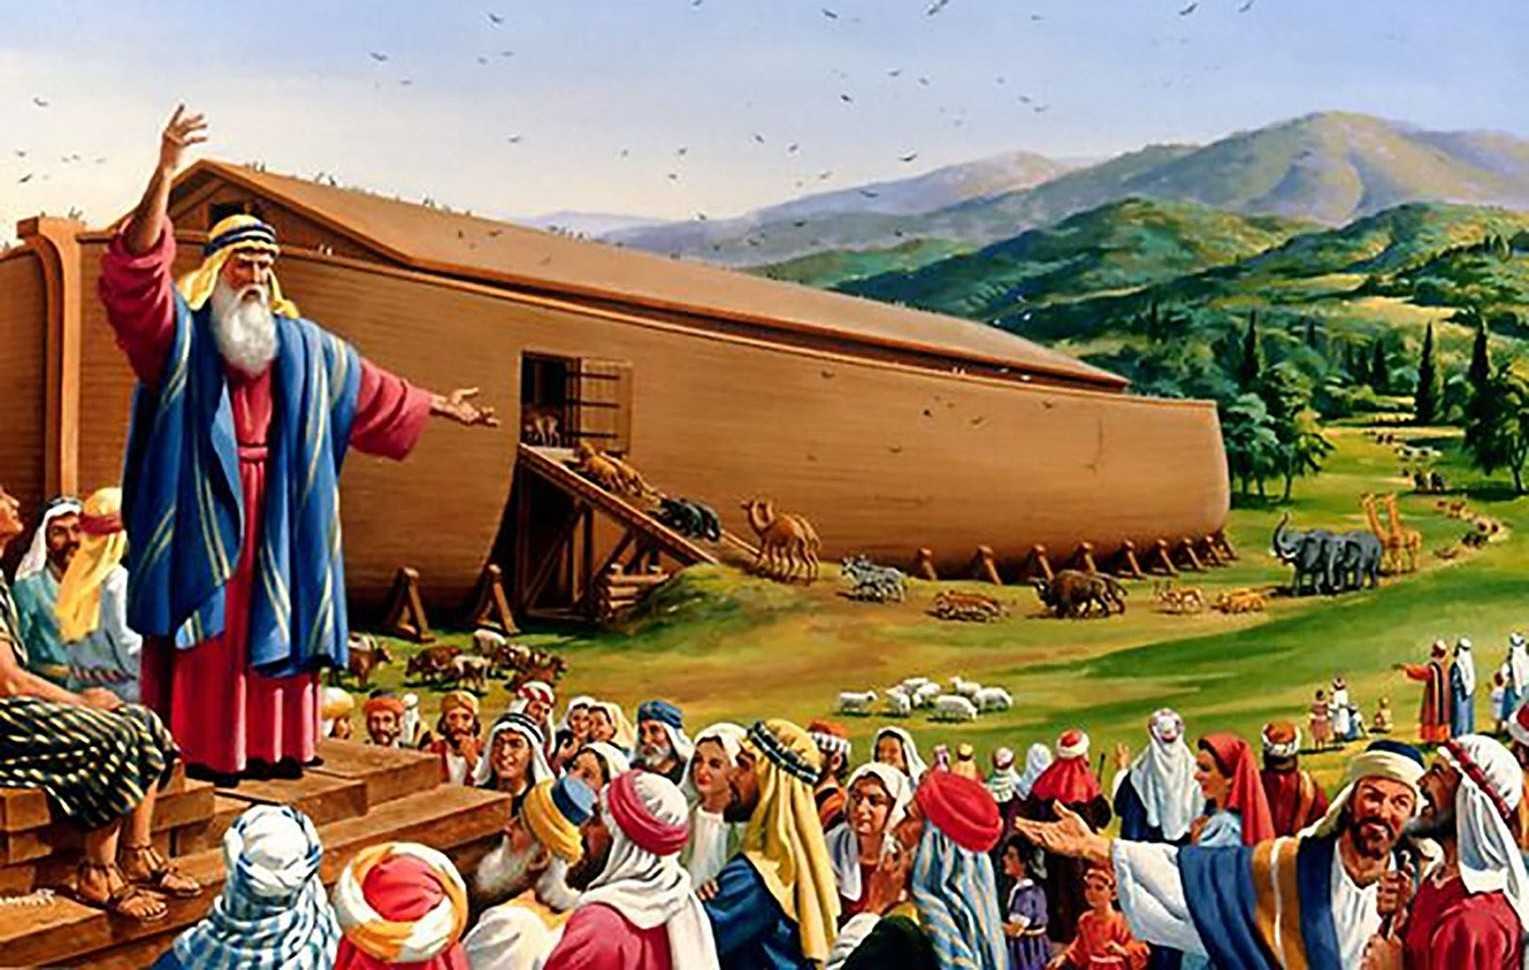 Ноев ковчег: найден ли он, о находке на горе арарат, фото, сколько лет ной строил корабль, сколько людей и животных было на нем, размеры и как он выглядел